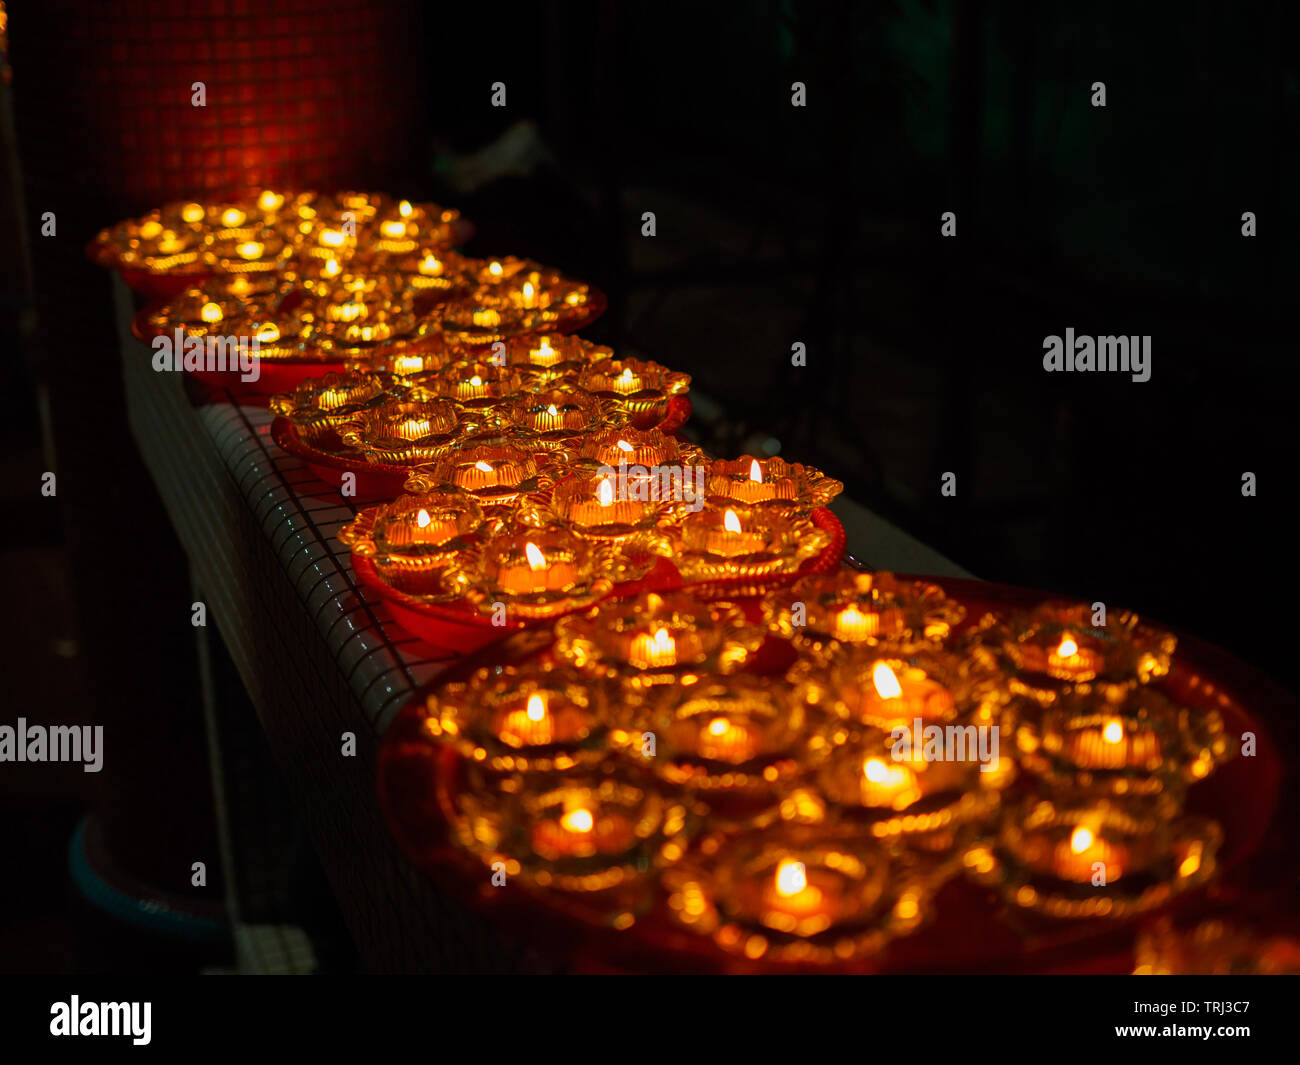 Singapur, 18. Mai 2019 - Nahaufnahme von einer Reihe von buddhistischen Öllampen in einem Tempel in der Vesak Day feiern. Öllampen symbolisieren Weisheit und Erleuchtung. Stockfoto